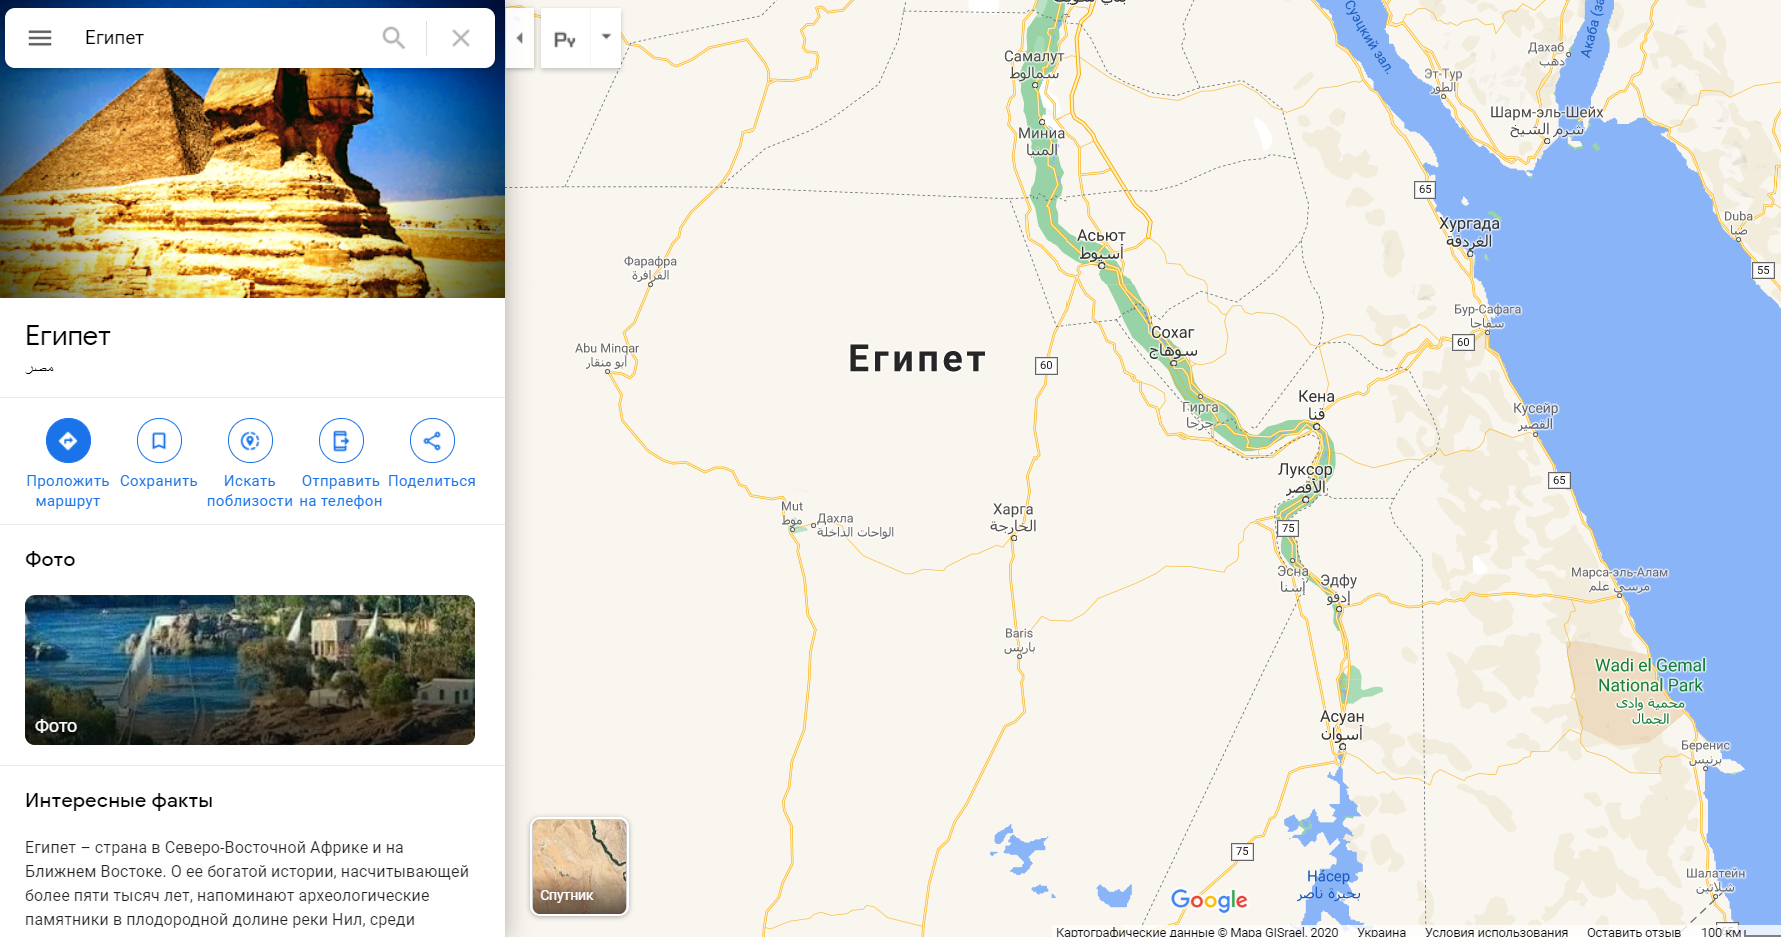 Єгипет на мапі світу